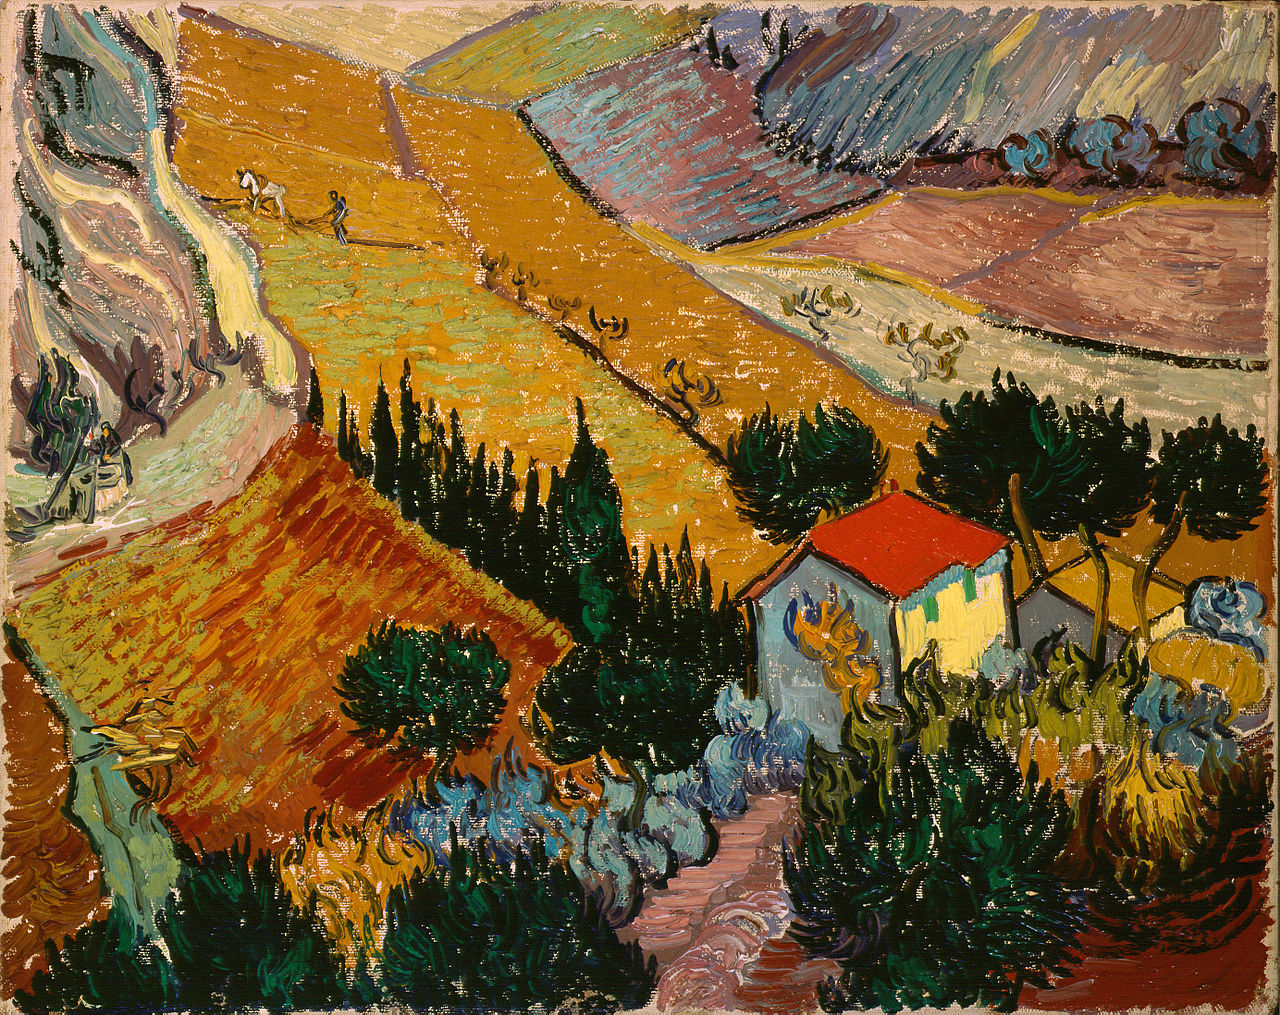 Paesaggio con casa e aratore by Vincent van Gogh - 1889 - 33 x 41.4 cm 